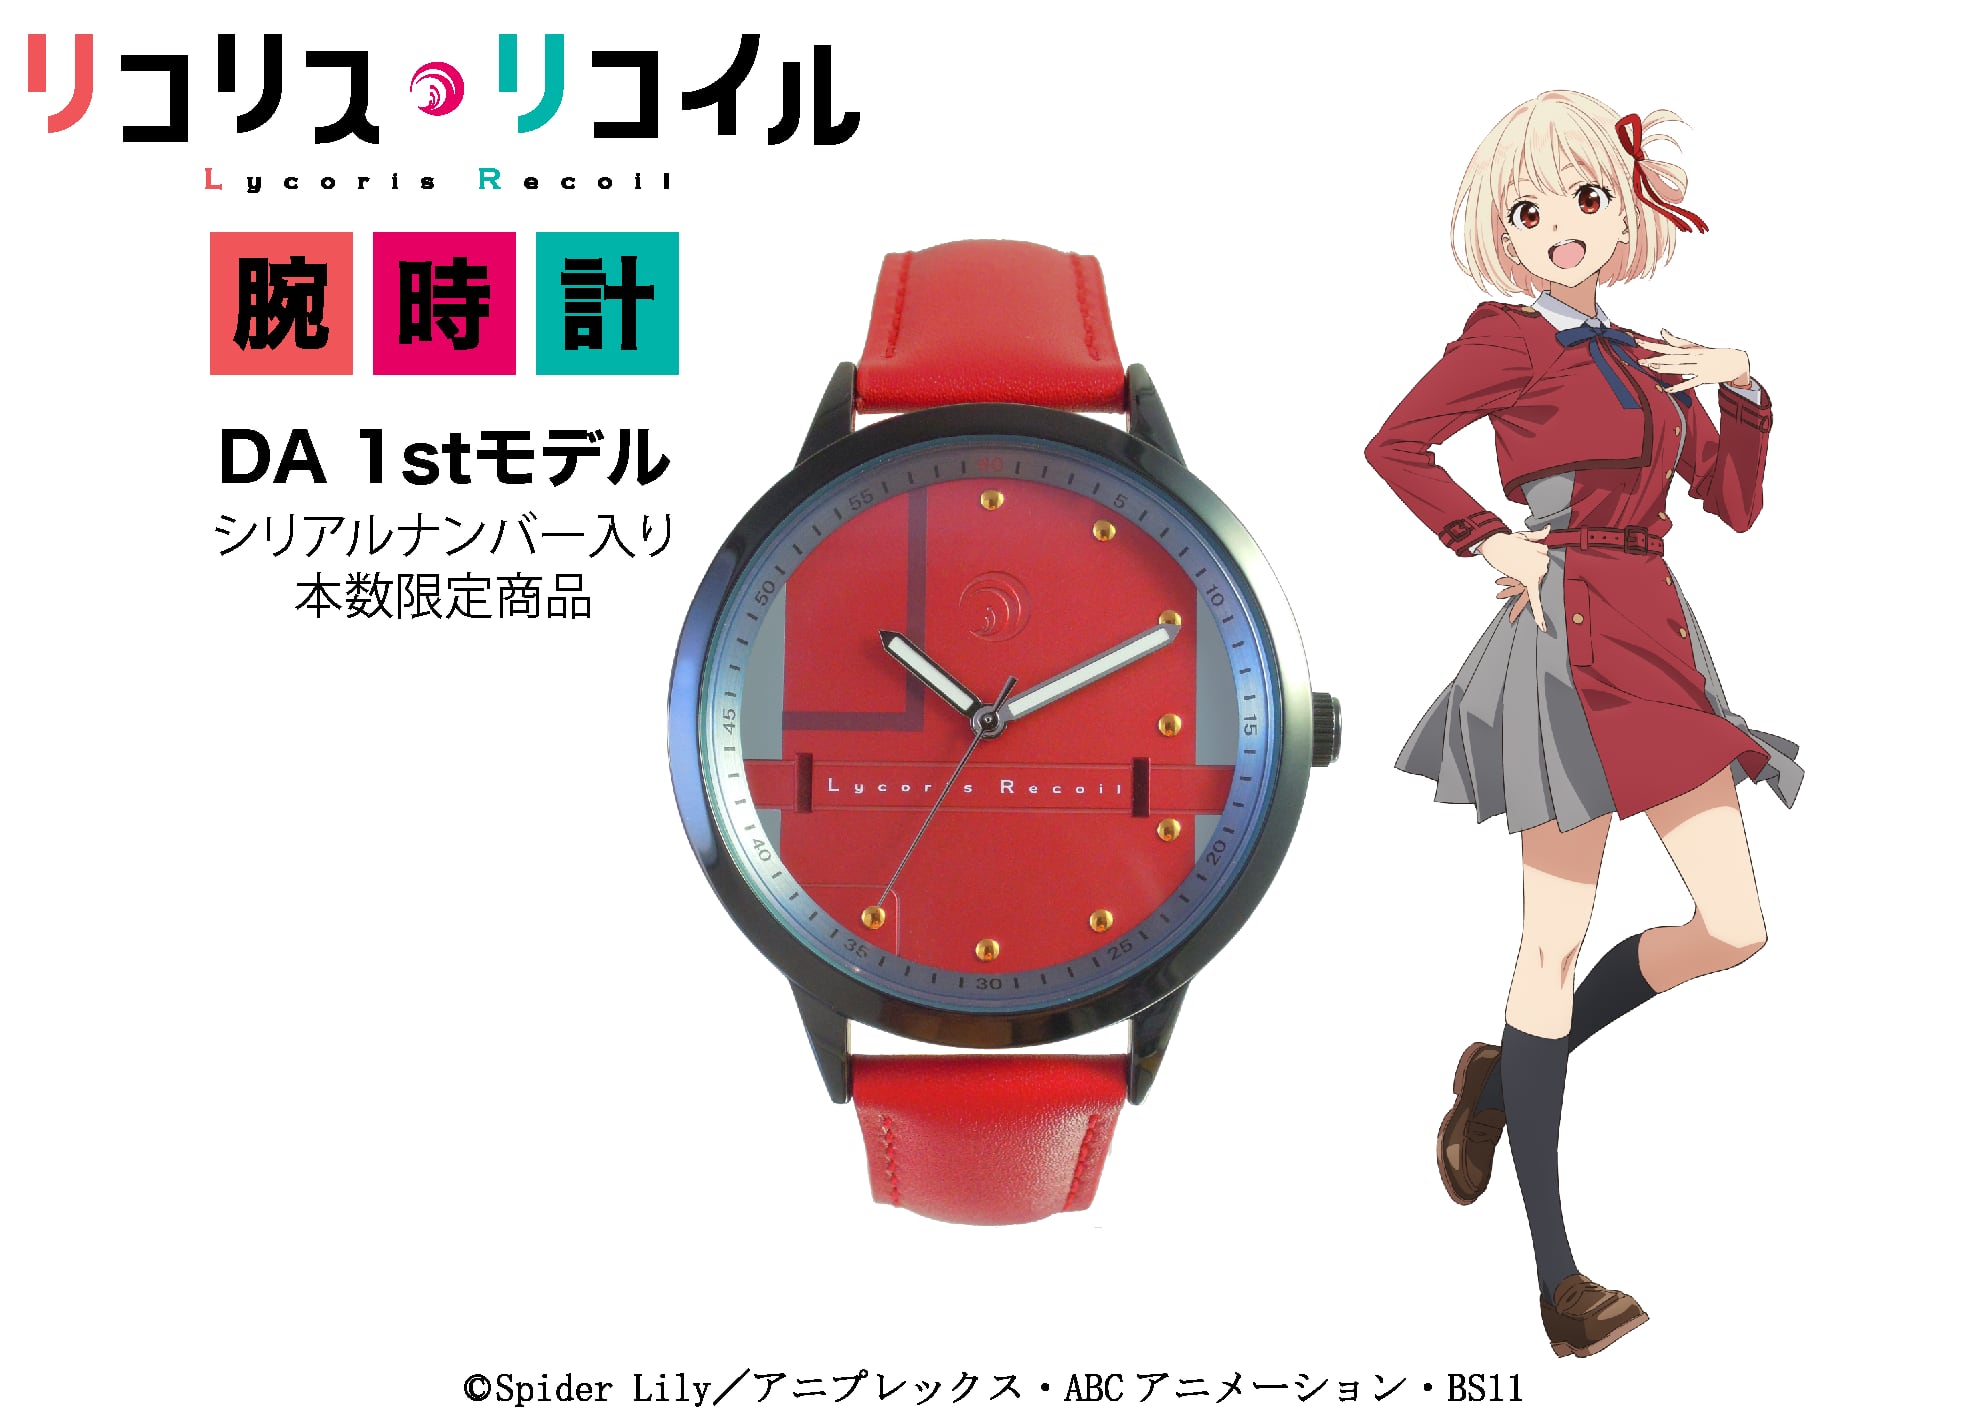 リコリス・リコイル 錦木千束(DA 1st)モデル腕時計-